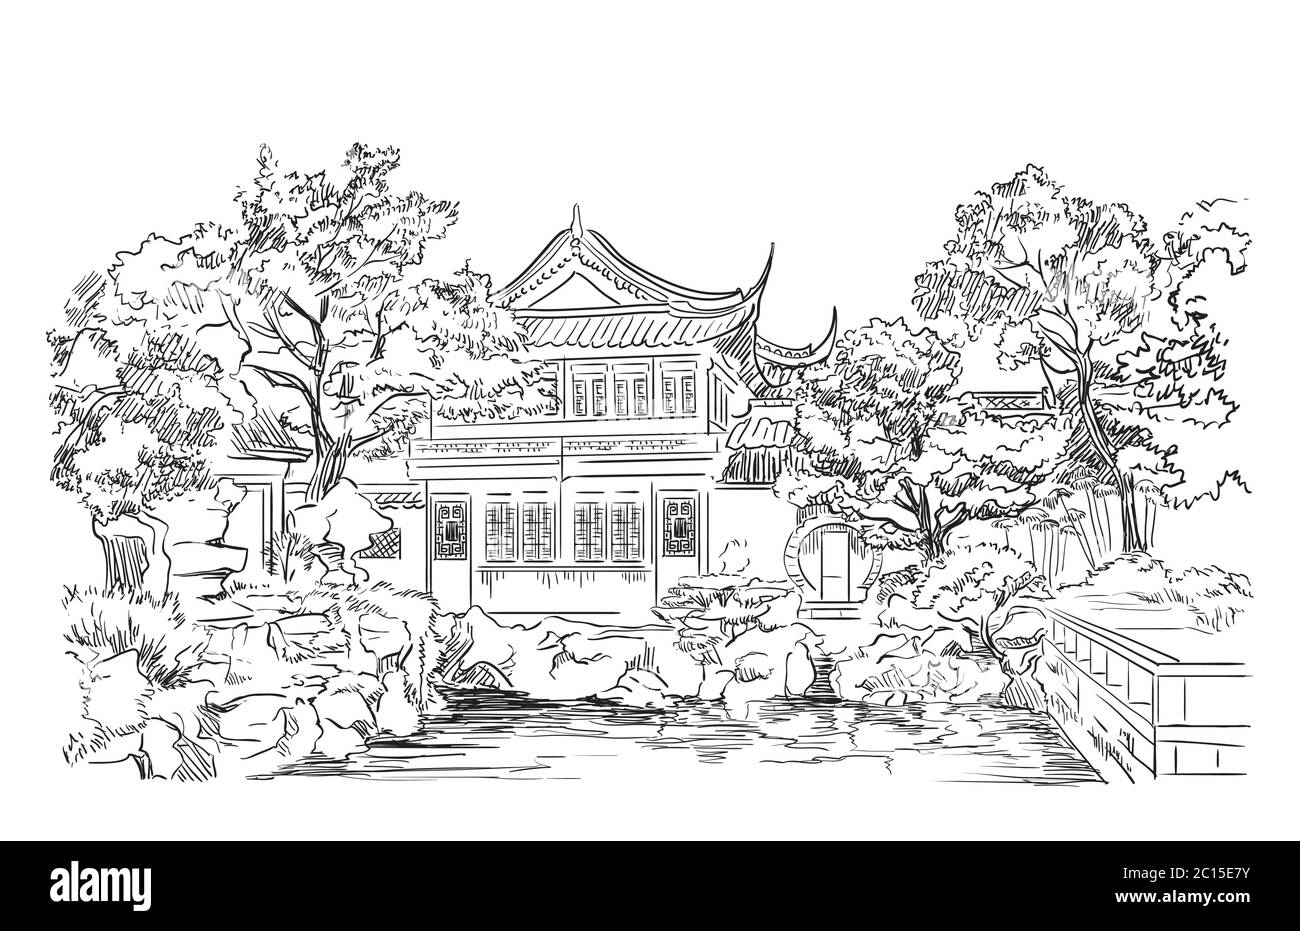 Giardino di contentment nella provincia di Shanghai, punto di riferimento della Cina. Illustrazione dello schizzo vettoriale disegnata a mano in colore nero isolato su sfondo bianco. Mento Illustrazione Vettoriale